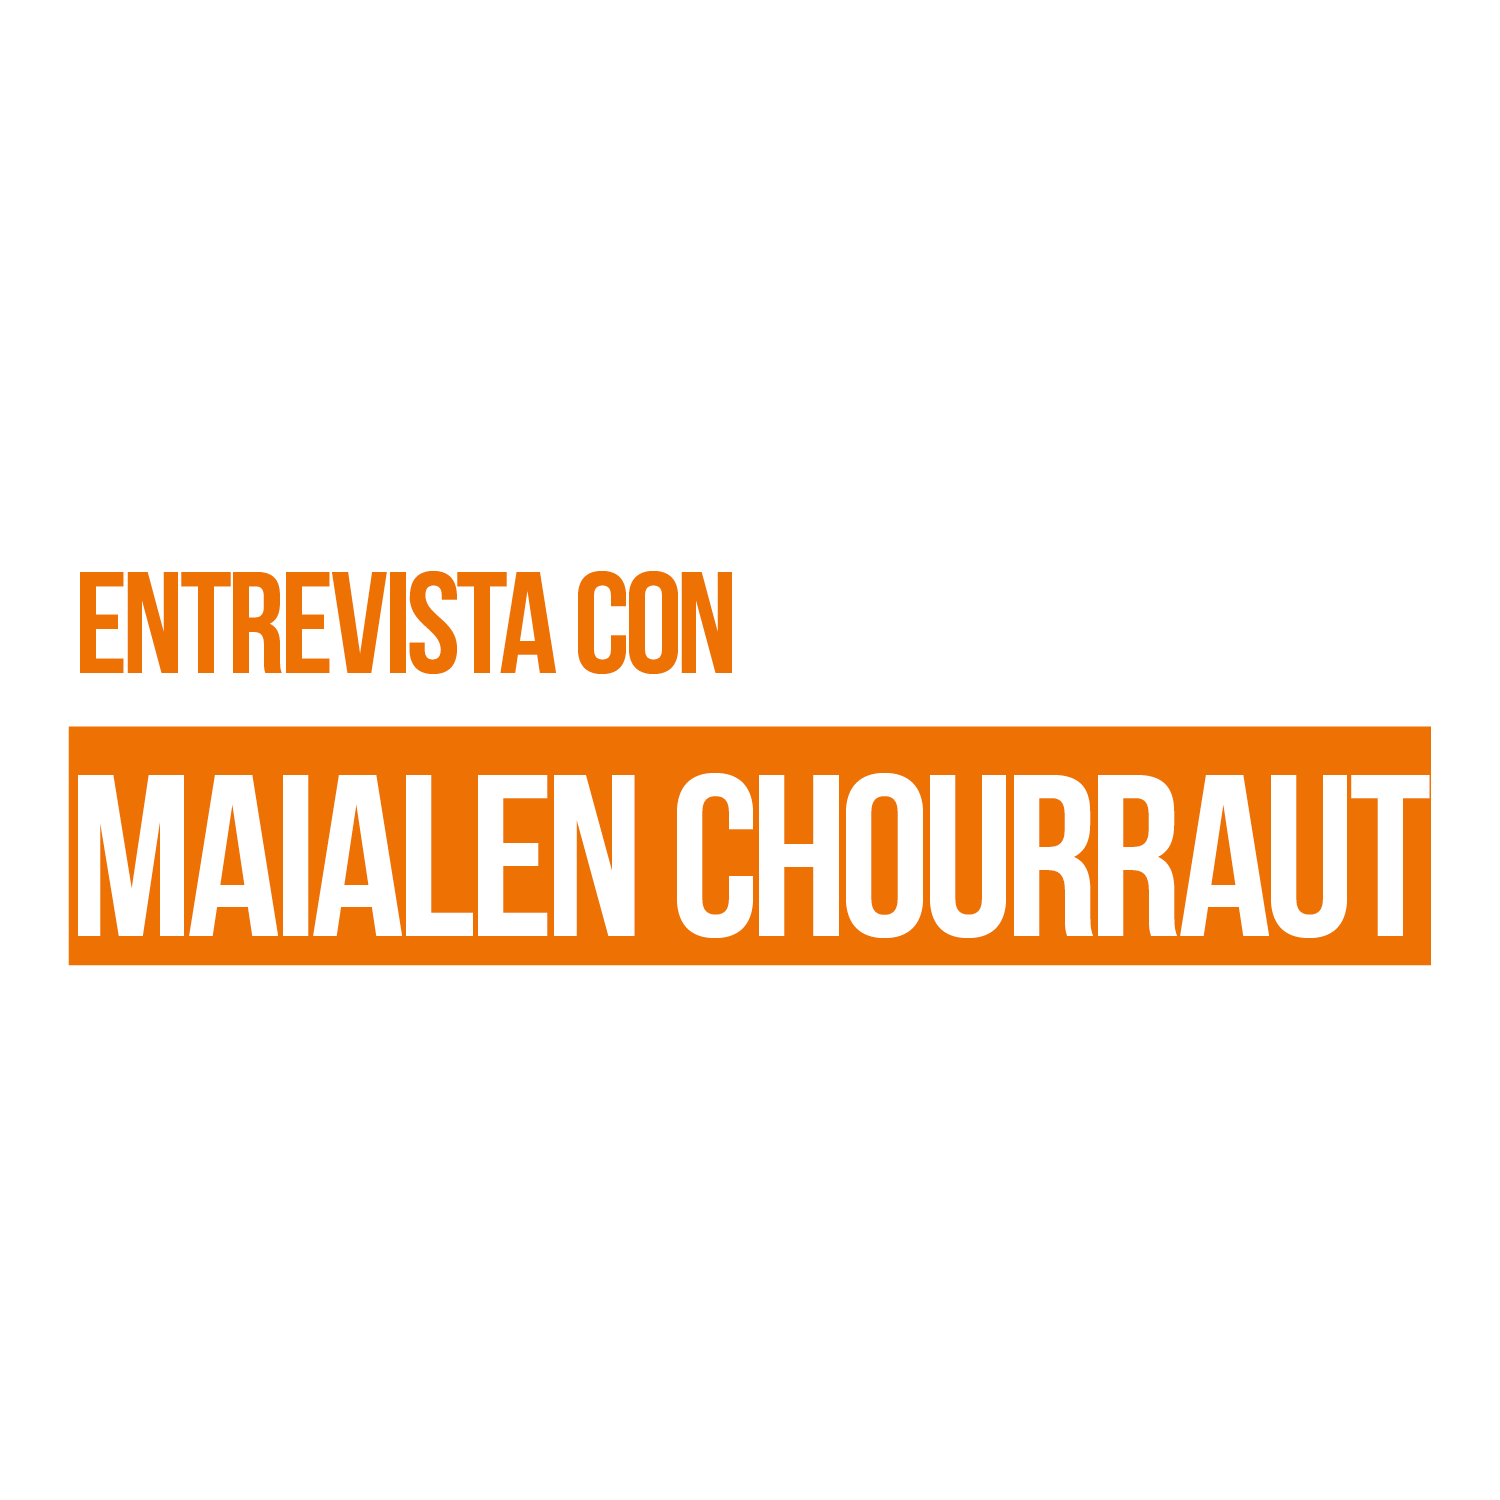 Entrevista con Mialen Chourraut